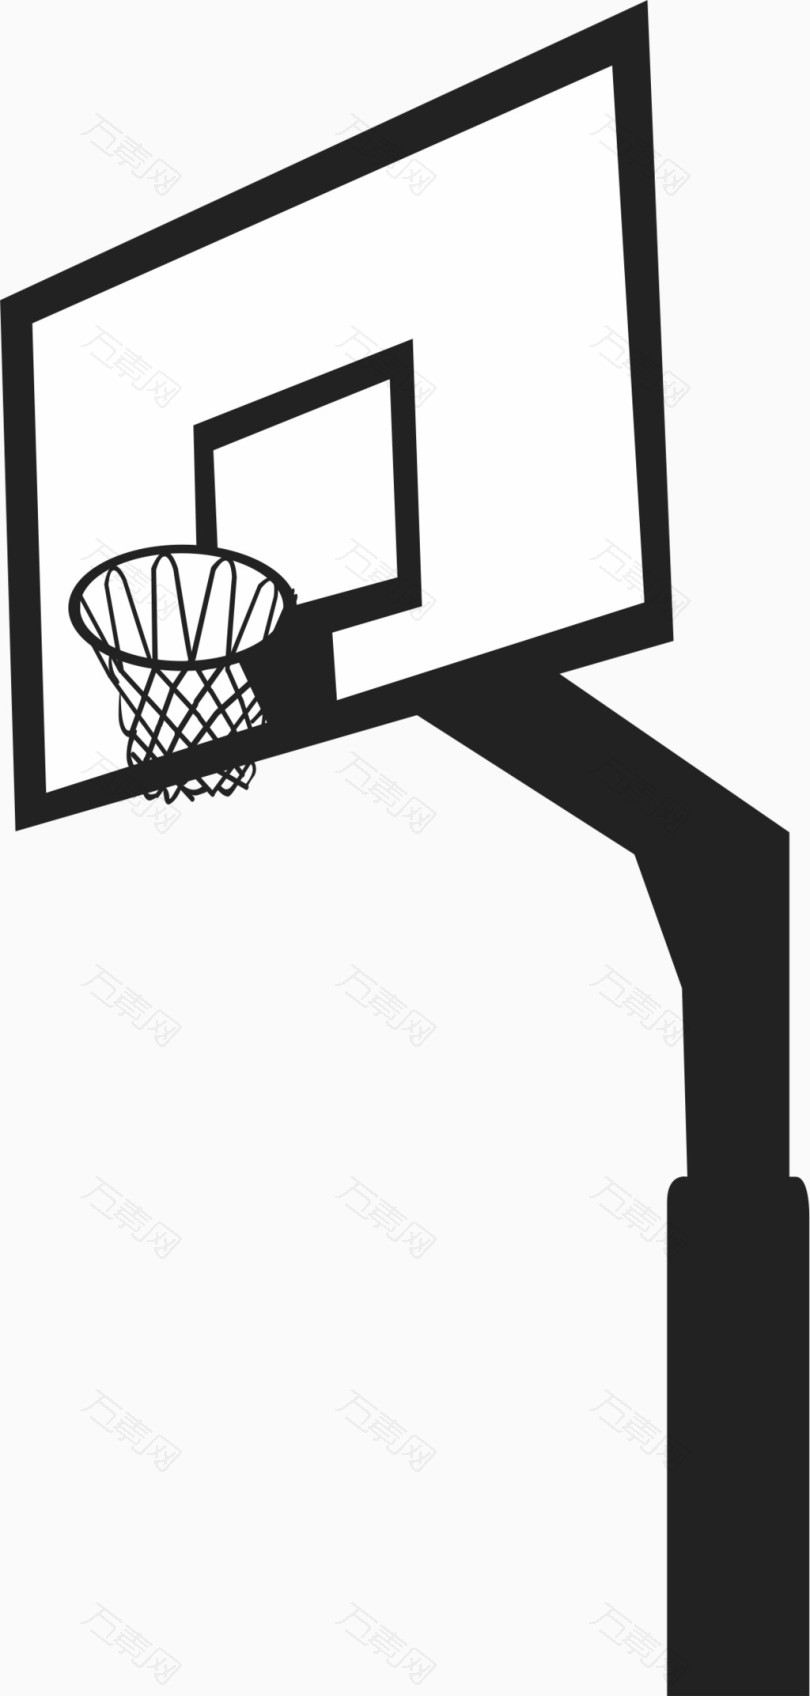 篮球框简笔画图片侧面图片